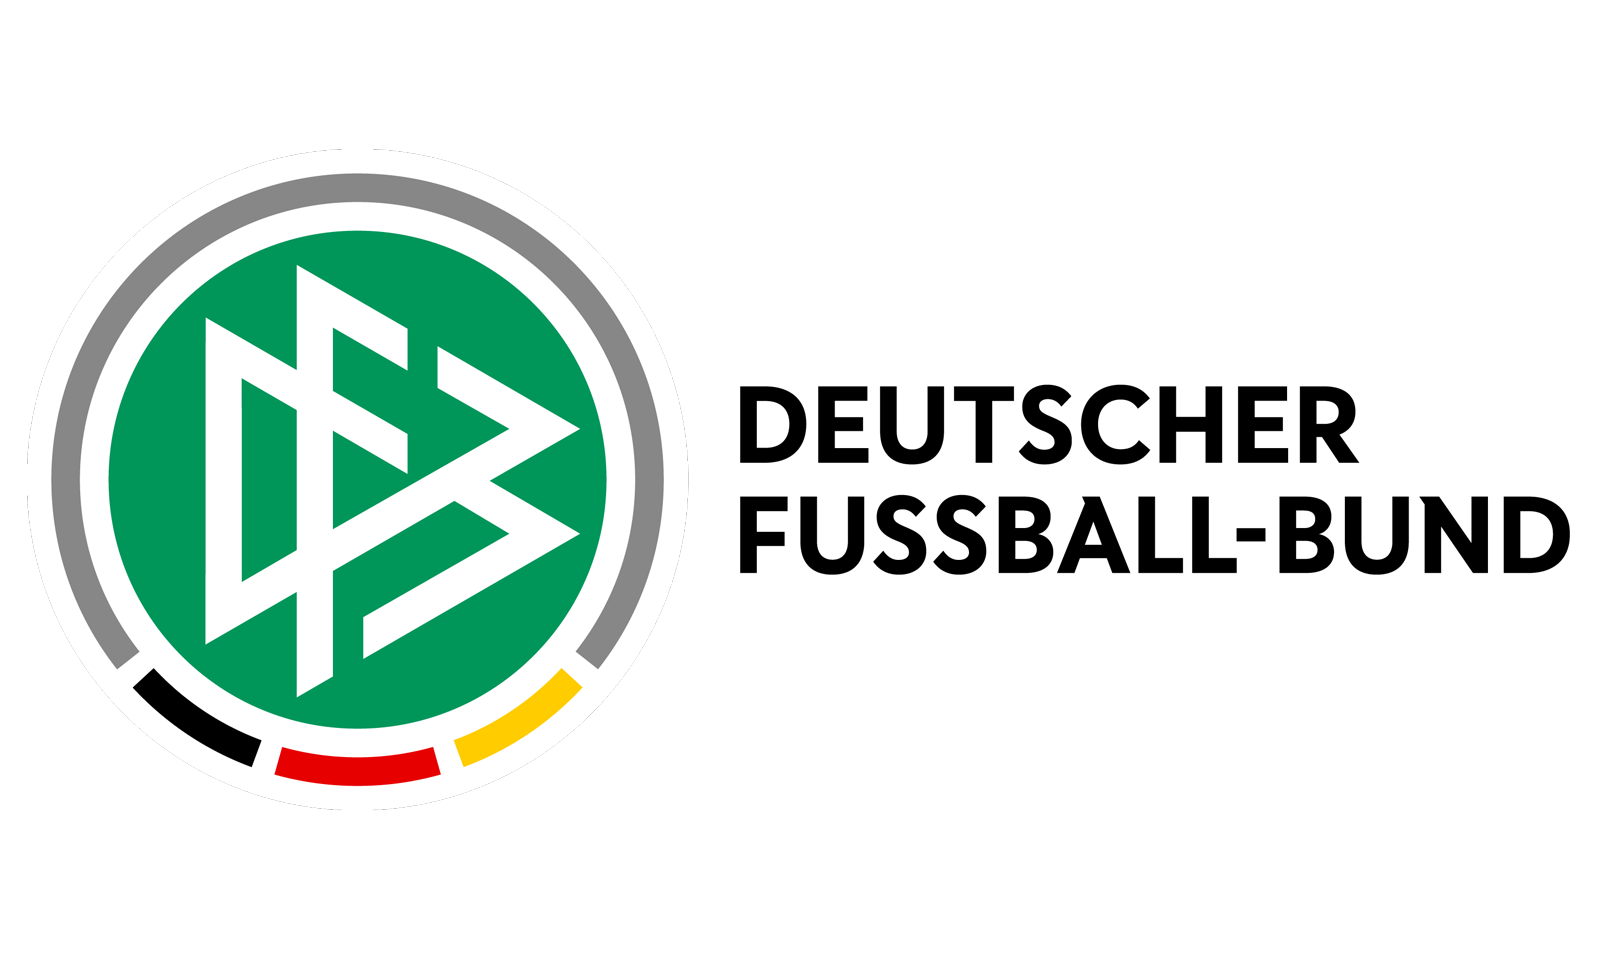 DFB Deutscher Fussball-Bund